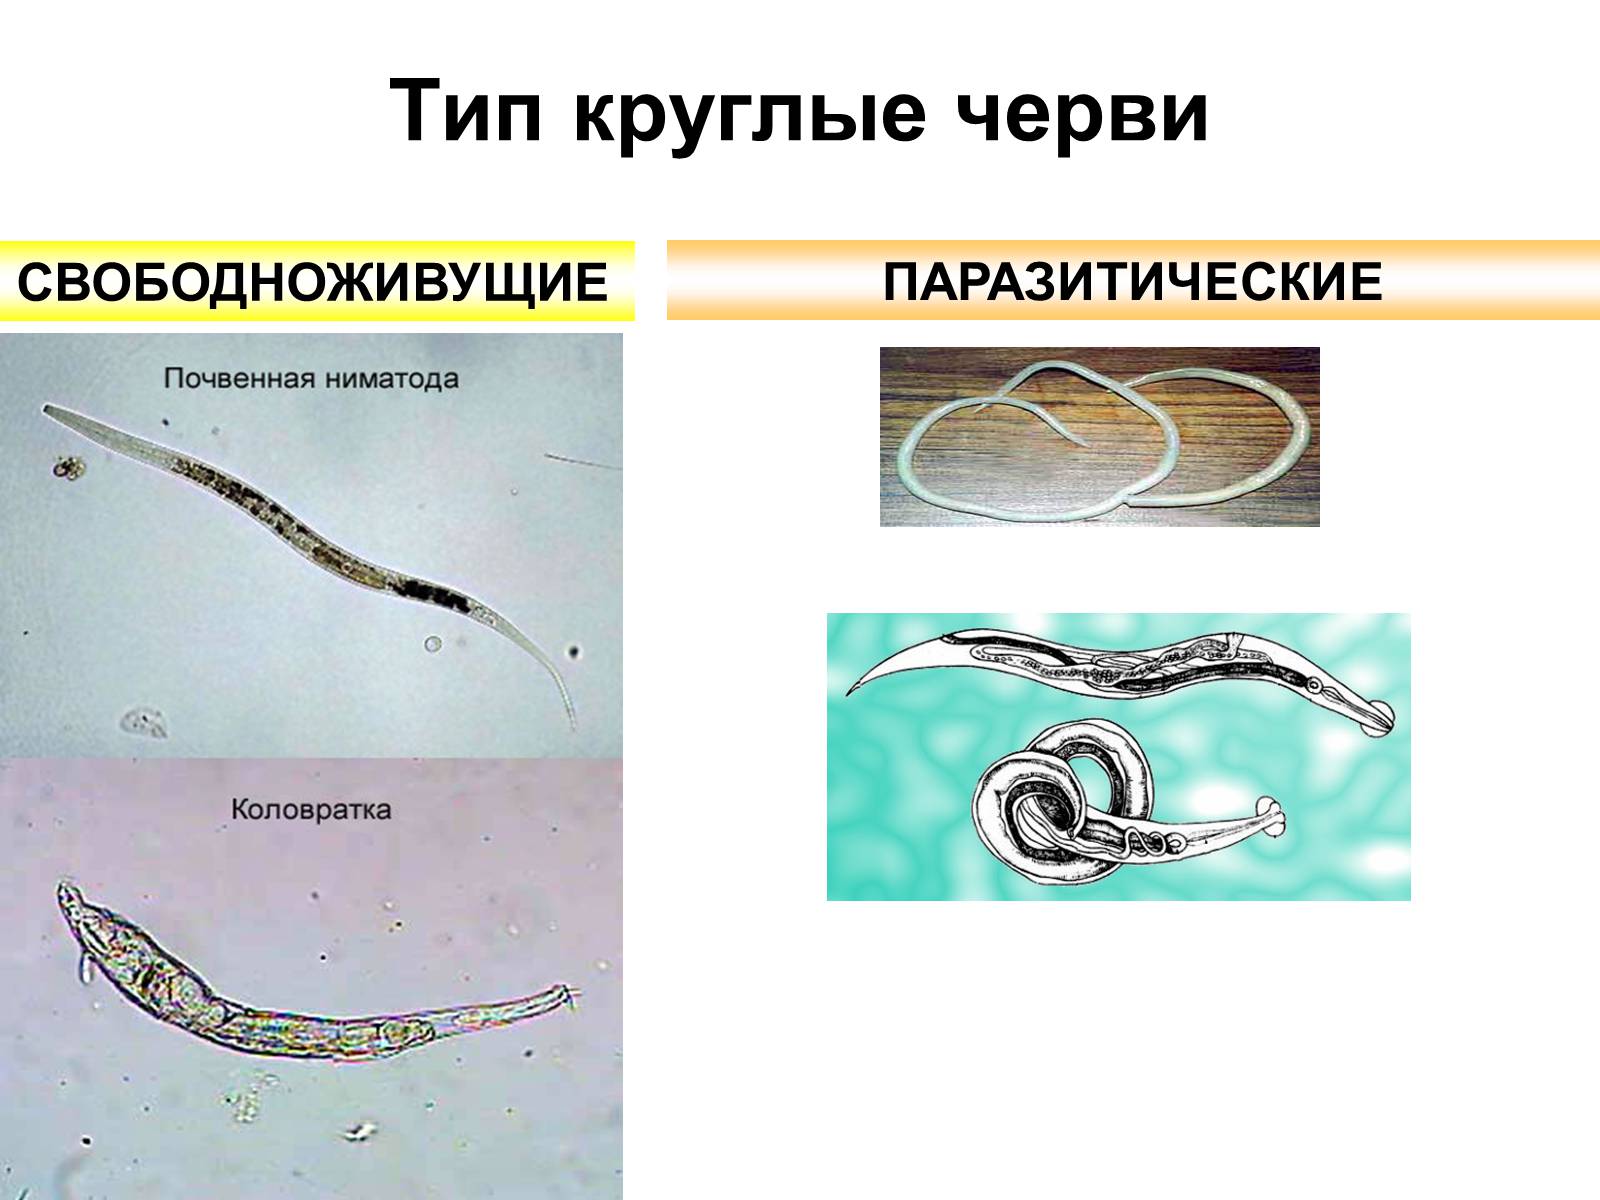 Круглые черви тип беспозвоночных. Паразитические черви Тип круглые черви. Свободоживущие и паразитические червей. Свободноживущие нематоды черви. Круглые черви паразиты представители.